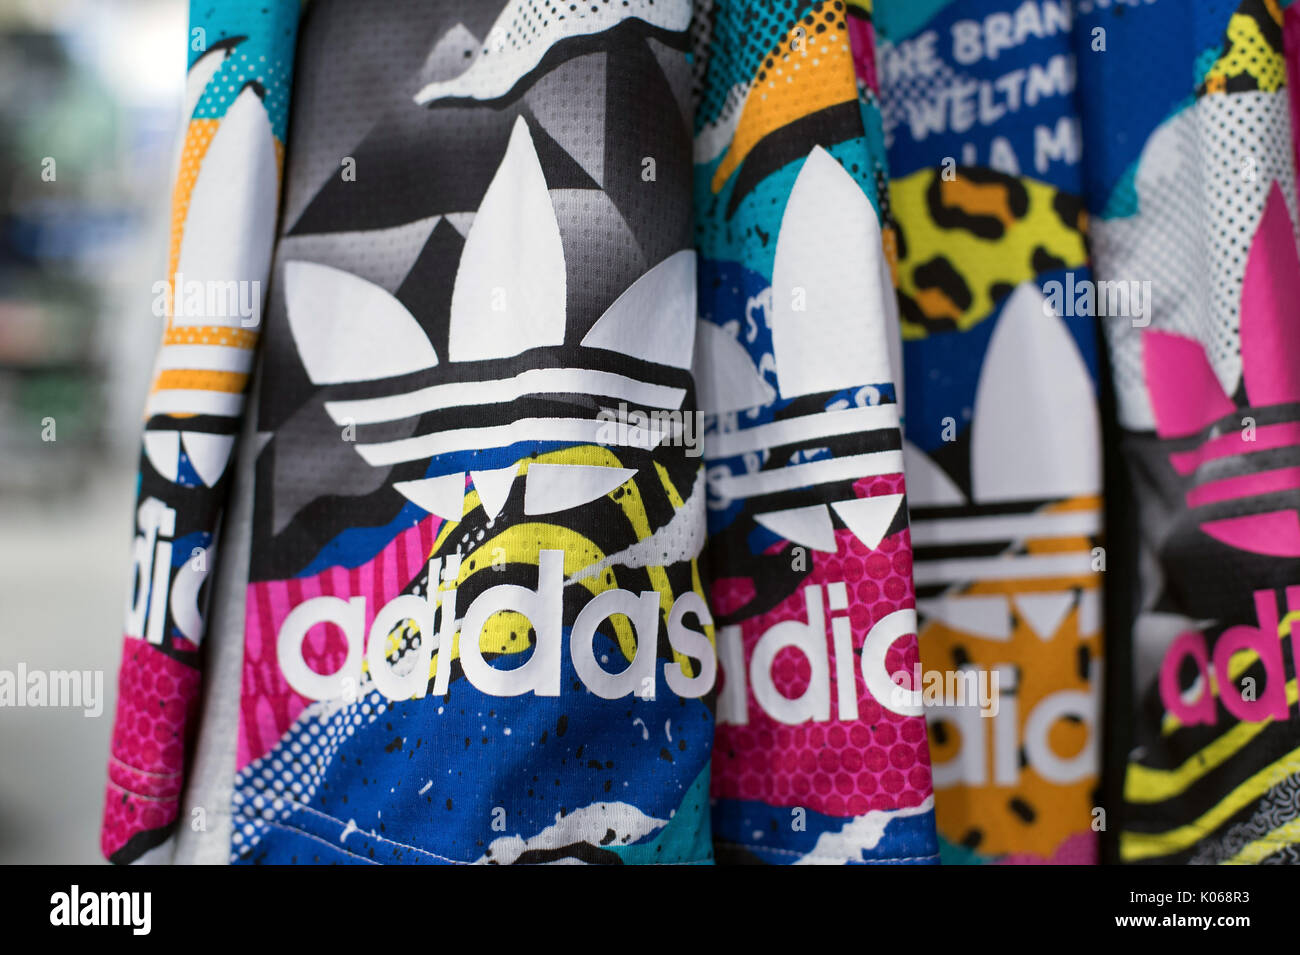 Munich, Alemania. 21 Aug, 2017. El logotipo de la empresa de artículos  deportivos Adidas en colorurful cortocircuitos en una tienda en Munich,  Alemania, el 21 de agosto de 2017. - Sin cable